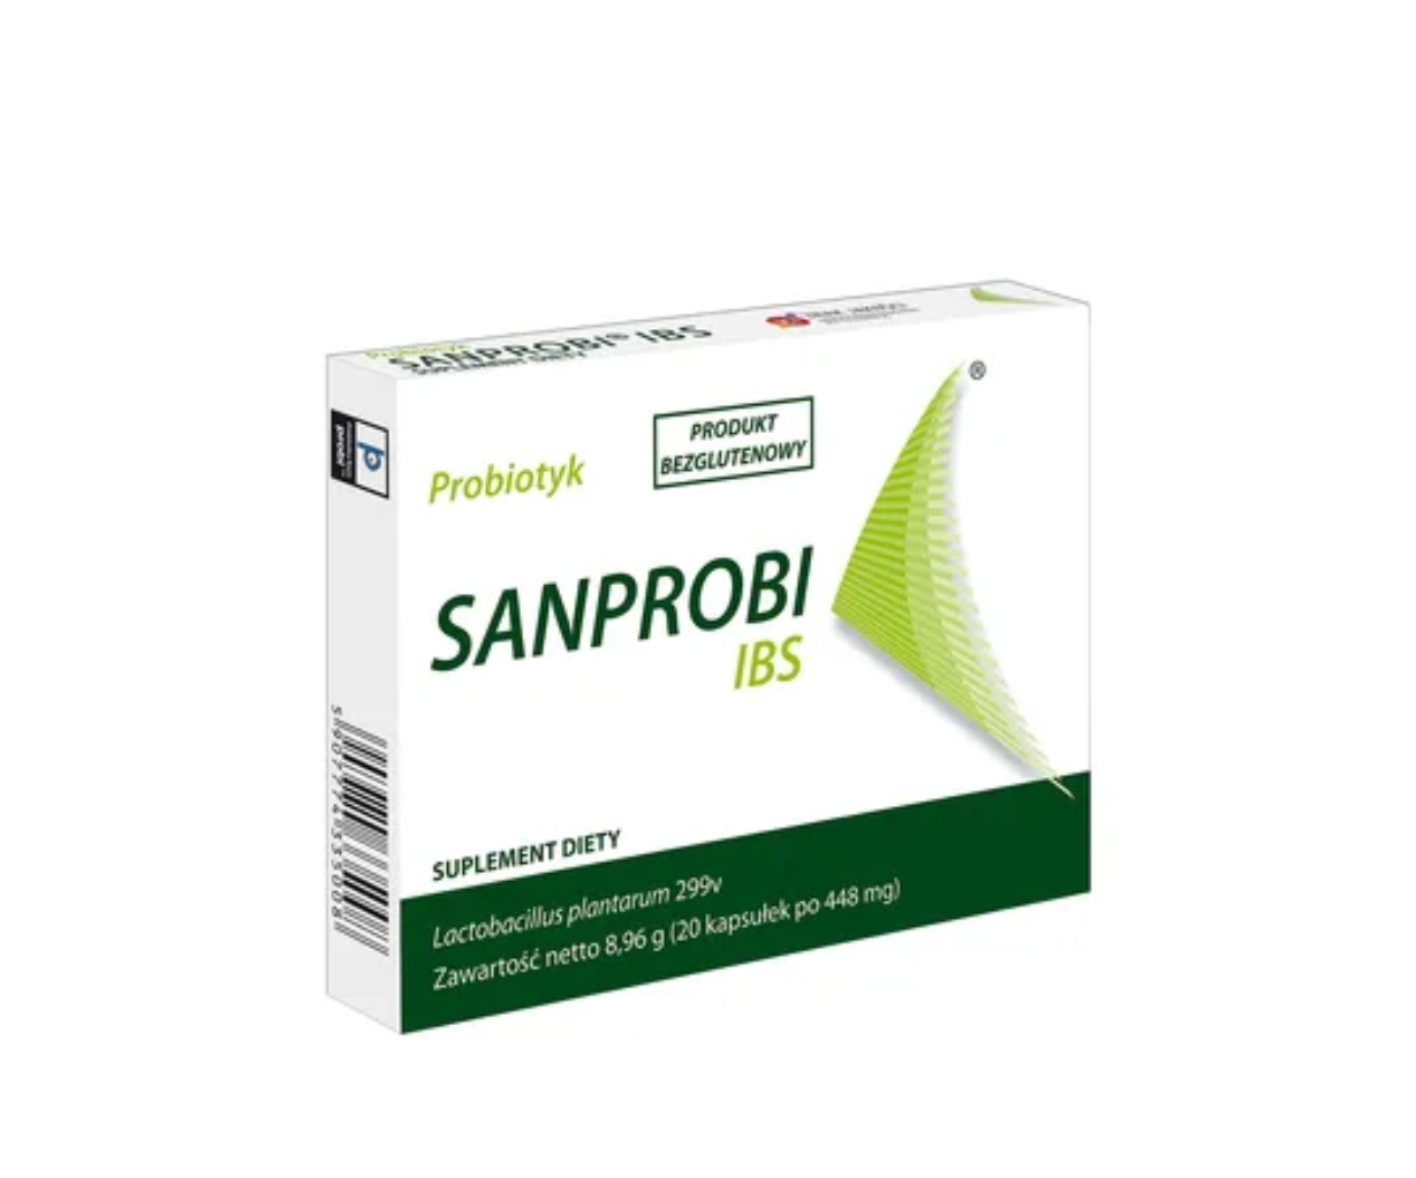 Sanprobi IBS, un suplemento dietético probiótico